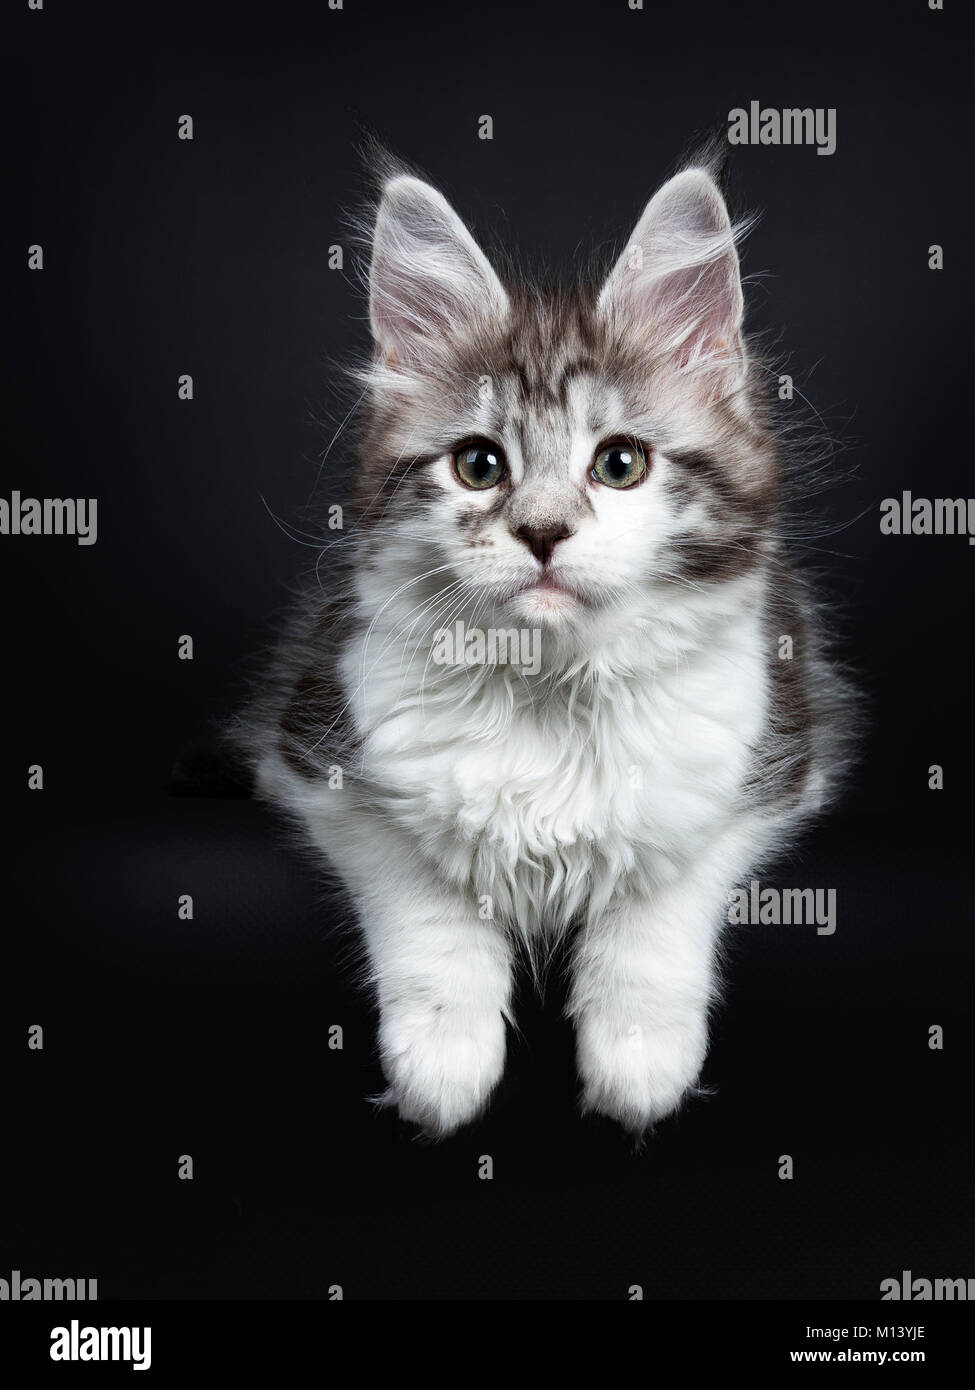 Schwarz Silber classic Tabby white Maine Coon kitten/junge Katze Verlegung  auf schwarzen Hintergrund mit Pfoten über den Rand hängen Stockfotografie -  Alamy